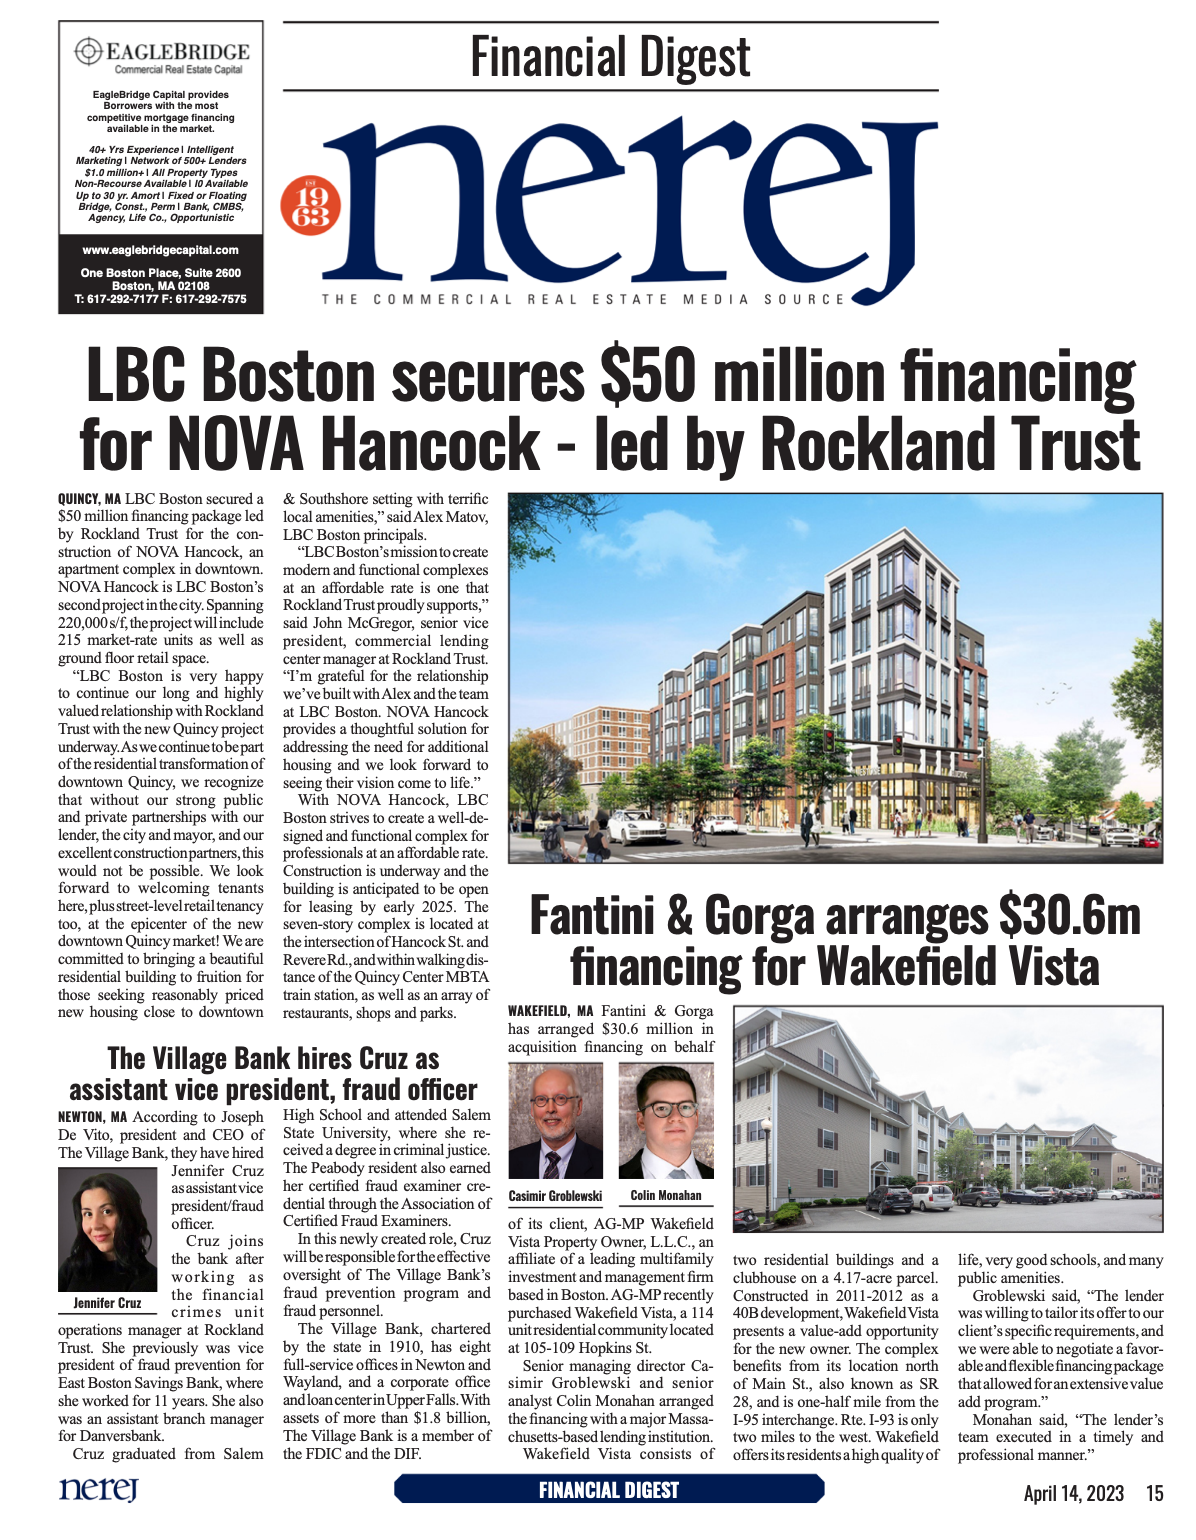 LBC Boston Secures $50 Million Financing